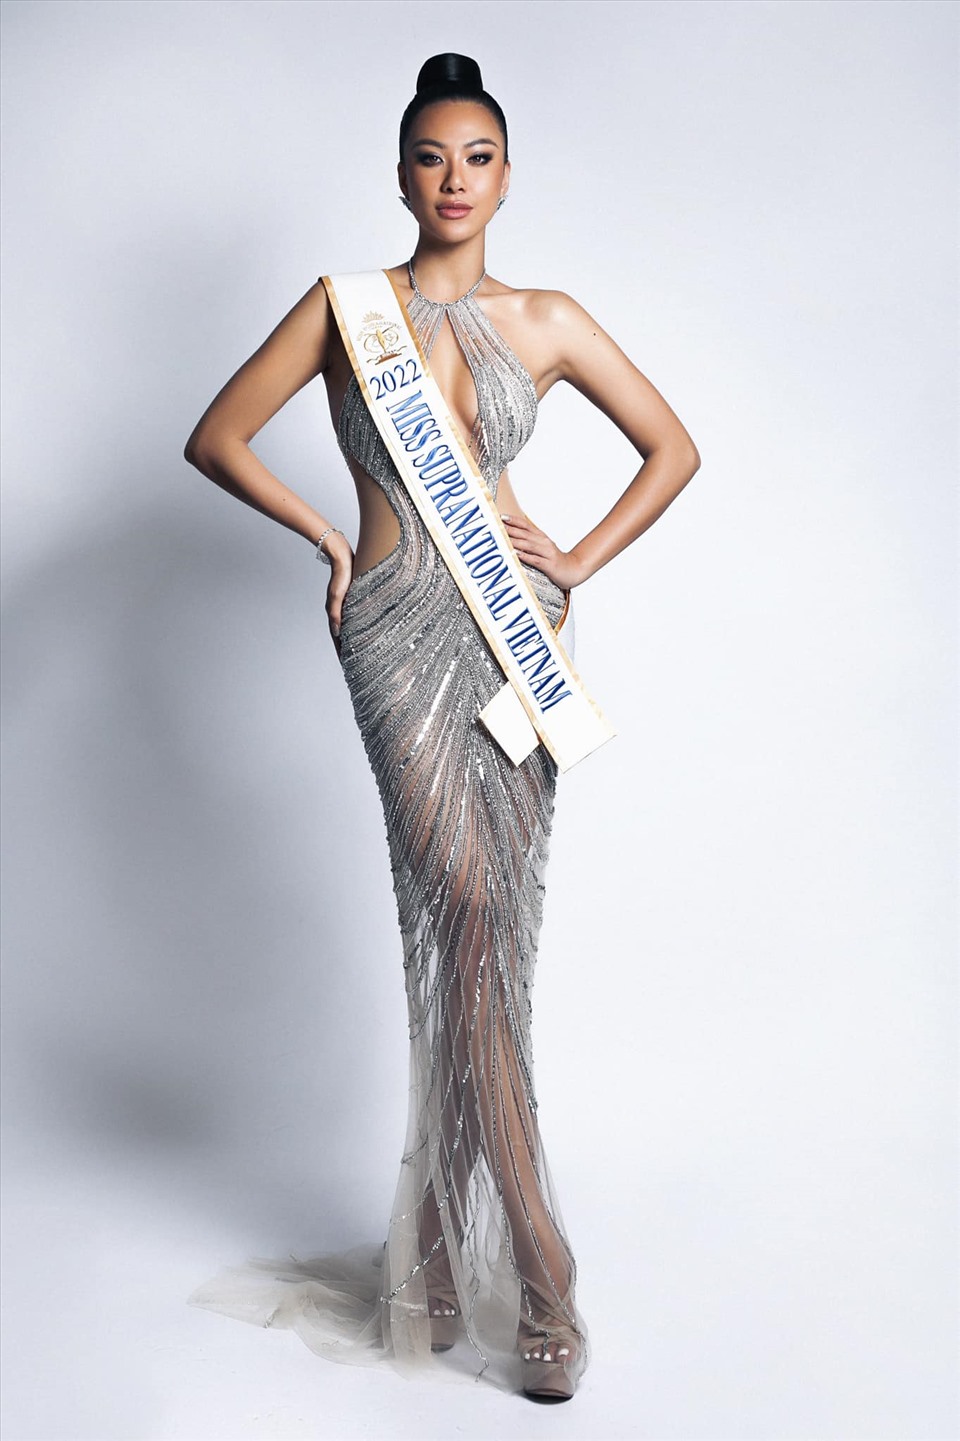 Sau khi trở về từ Miss Universe, Kim Duyên tiếp tục được giao trọng trách đại diện Việt Nam tham dự Miss Supra